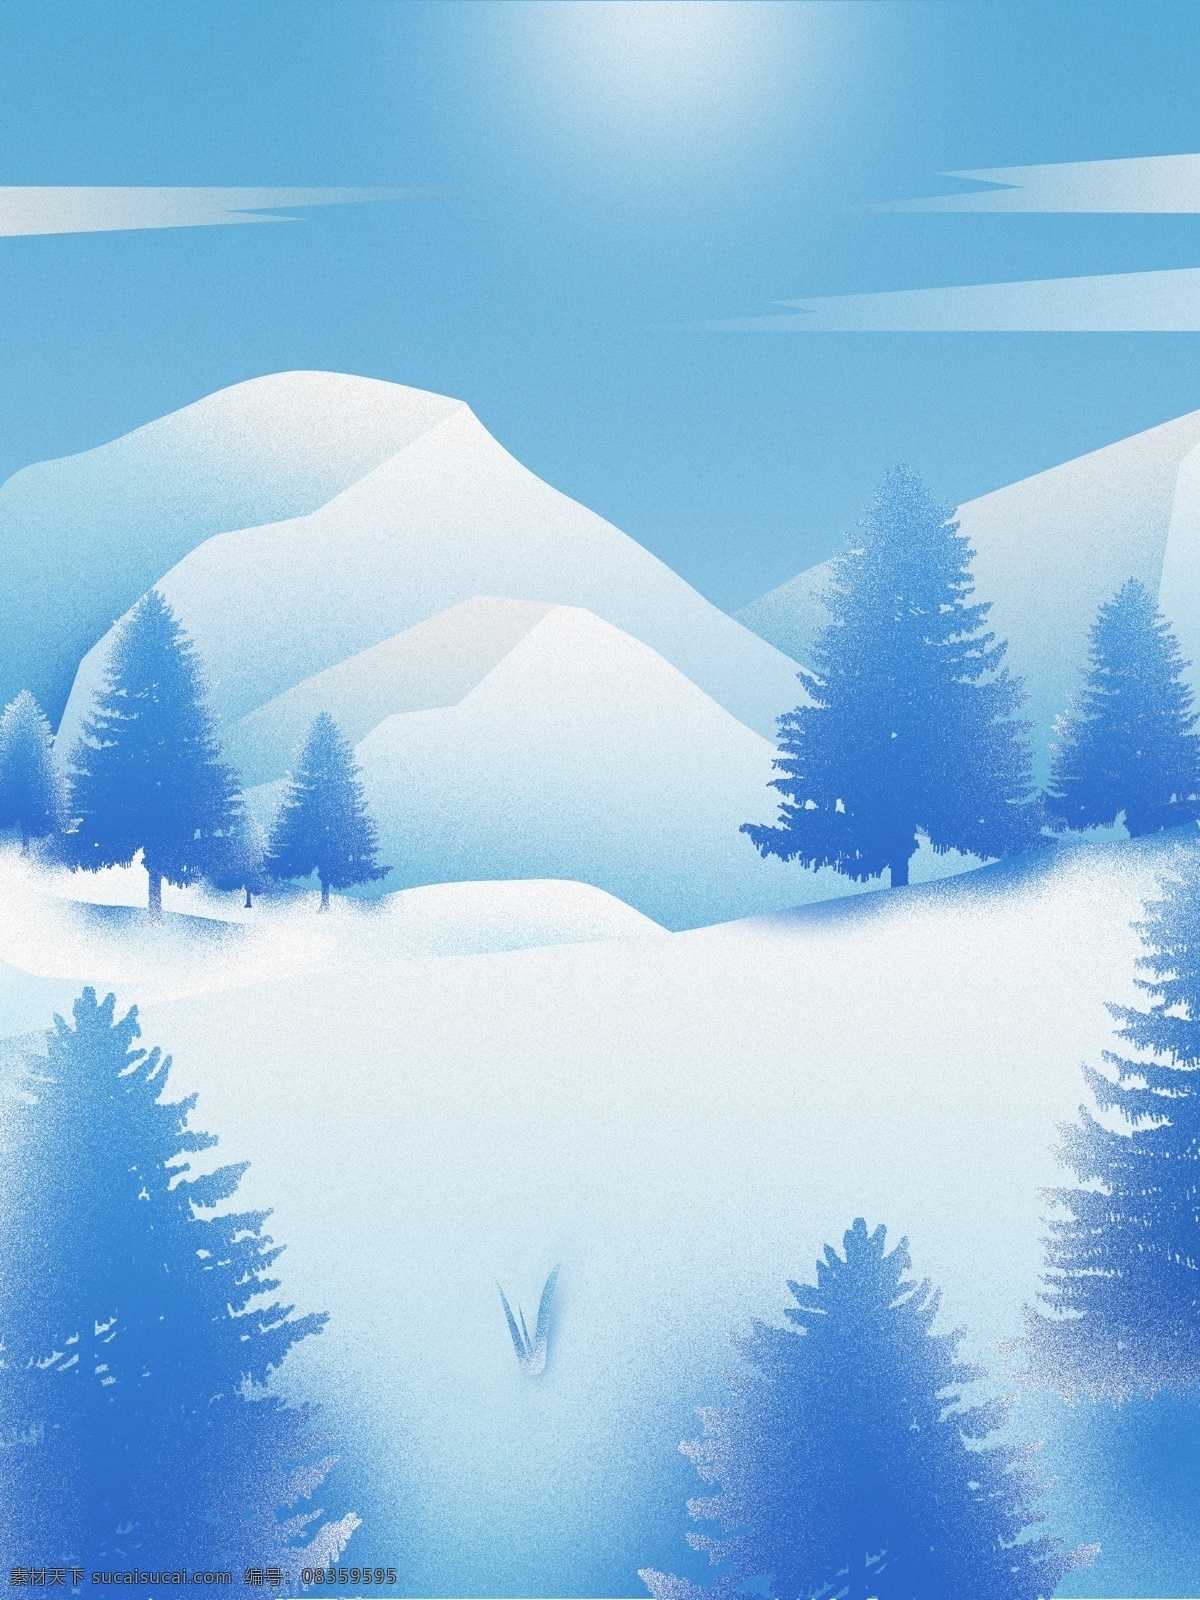 创意 蓝白色 雪山 背景 蓝色 蓝色背景 背景图 滑雪地 背景设计 彩绘背景 通用背景 psd背景 促销背景 背景展板图 冬季素材